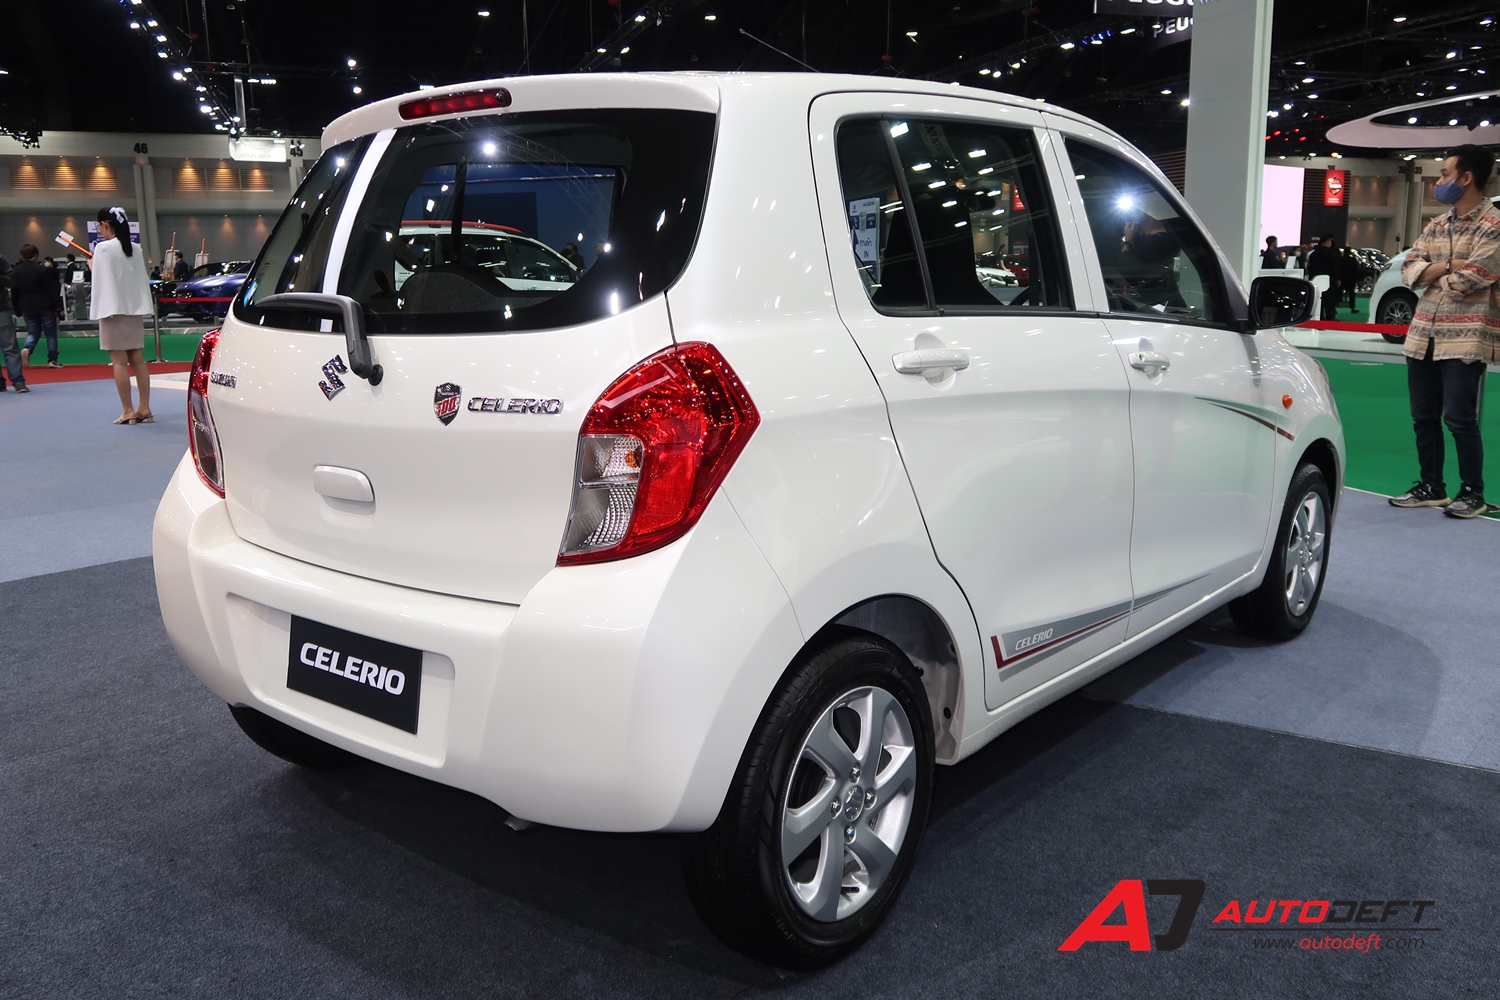 Suzuki celerio Sales increase despite COVID19